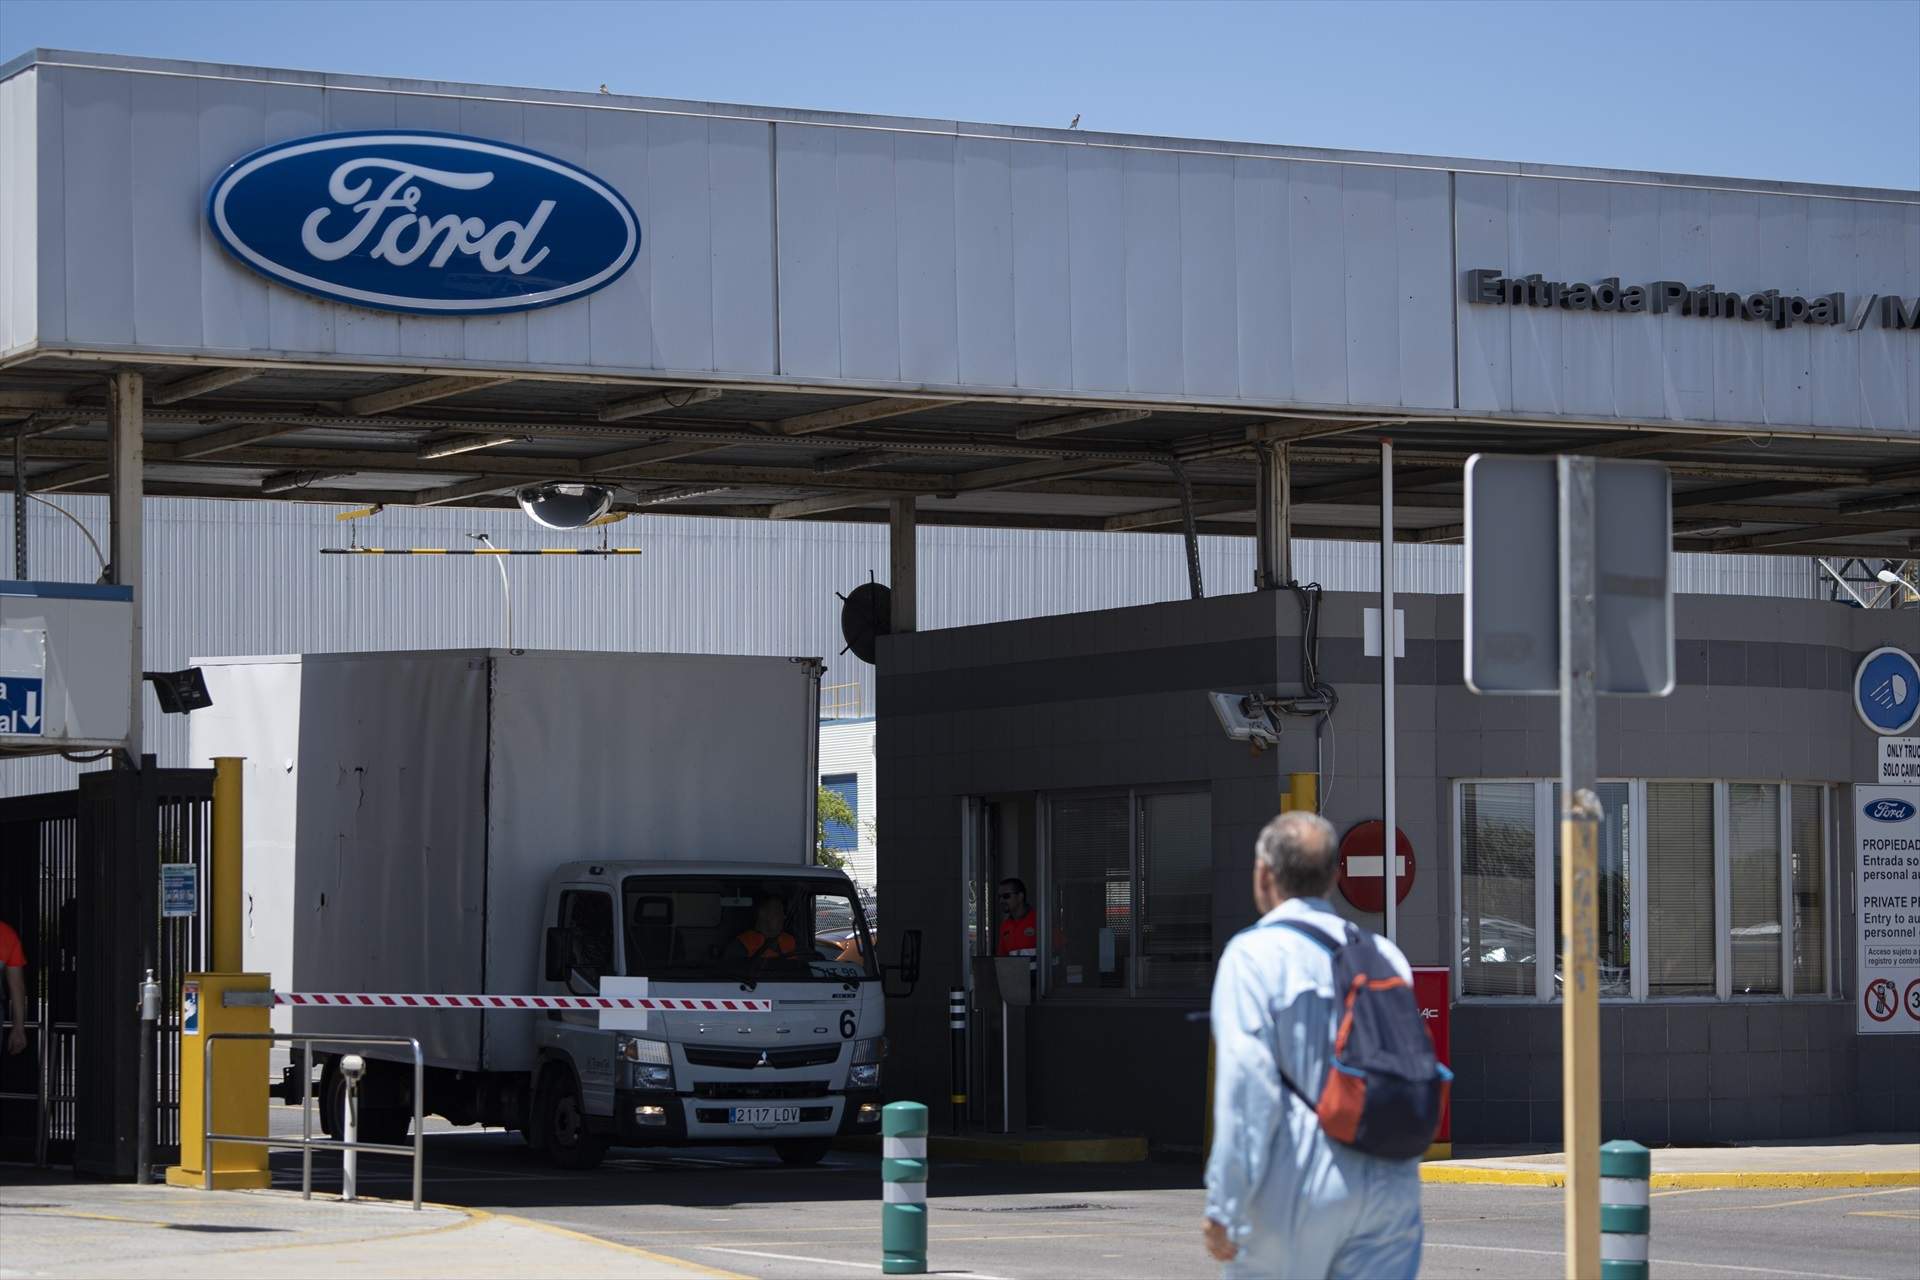 Ford mantendrá la carga de trabajo en Almussafes con un nuevo vehículo, mientras concreta su futuro